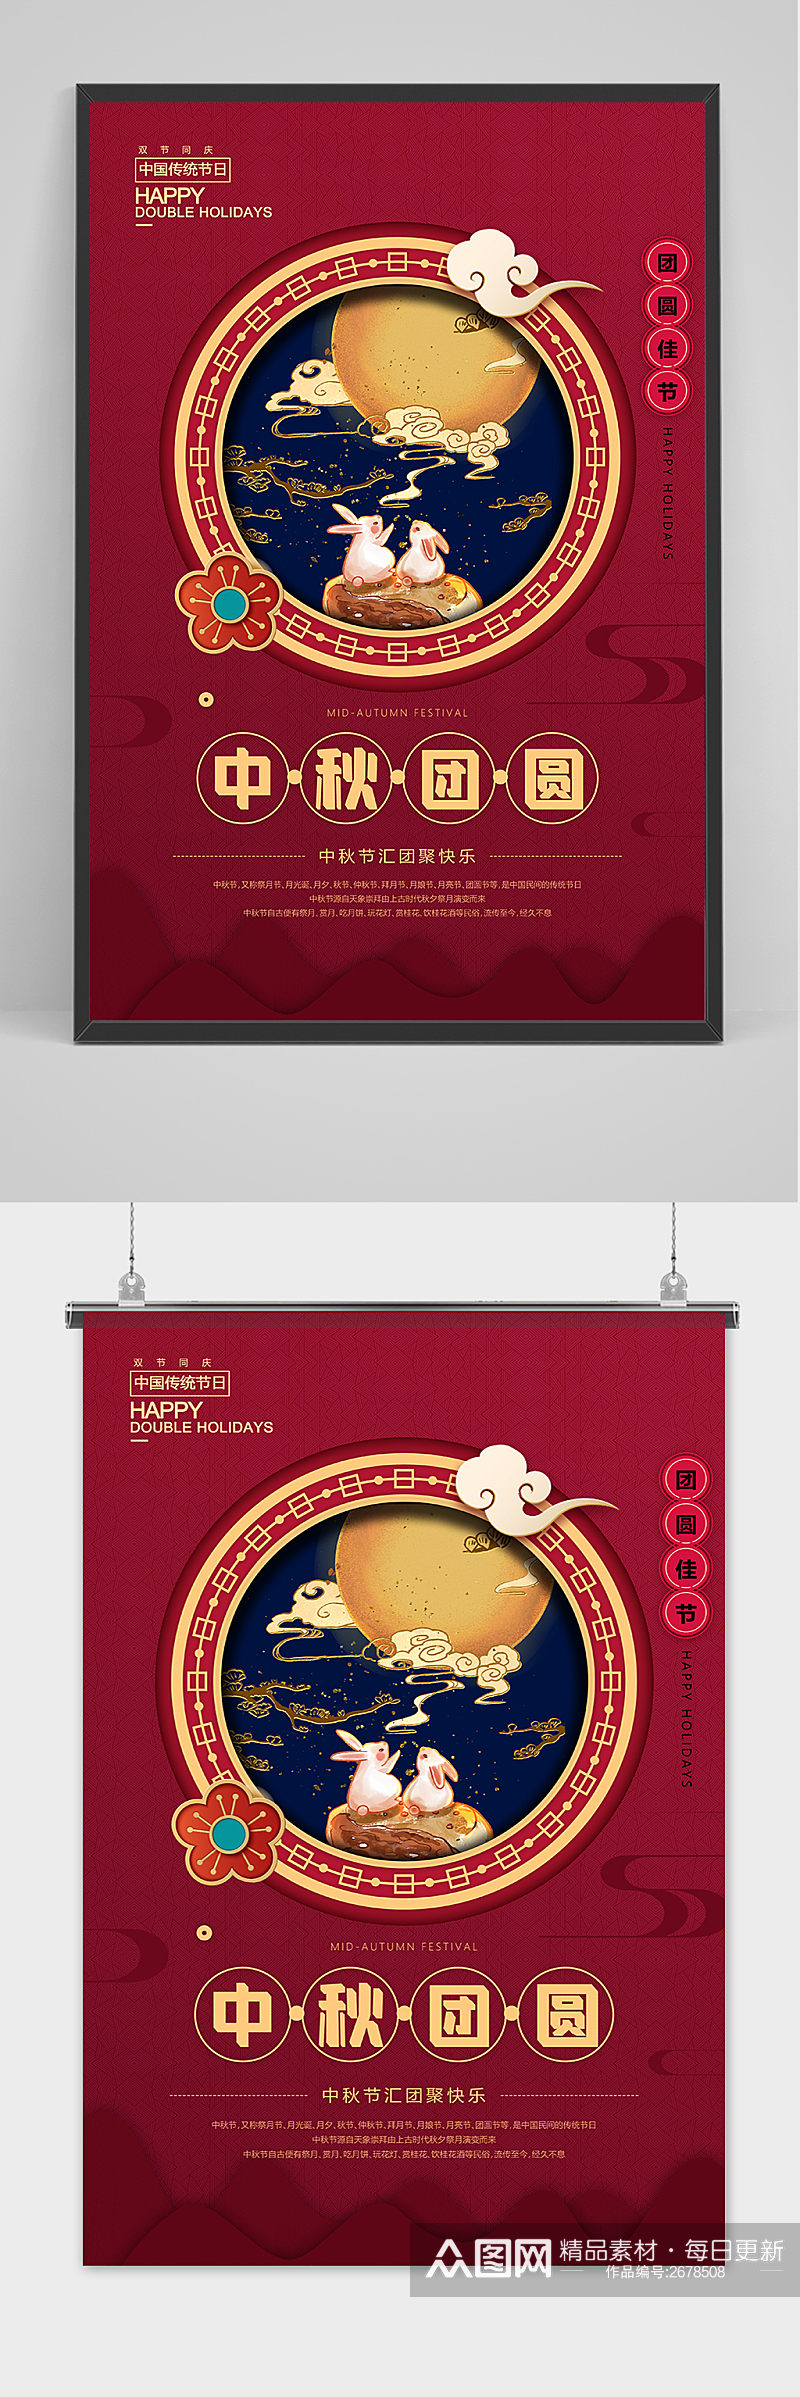 时尚红色中国风唯美中秋节海报素材